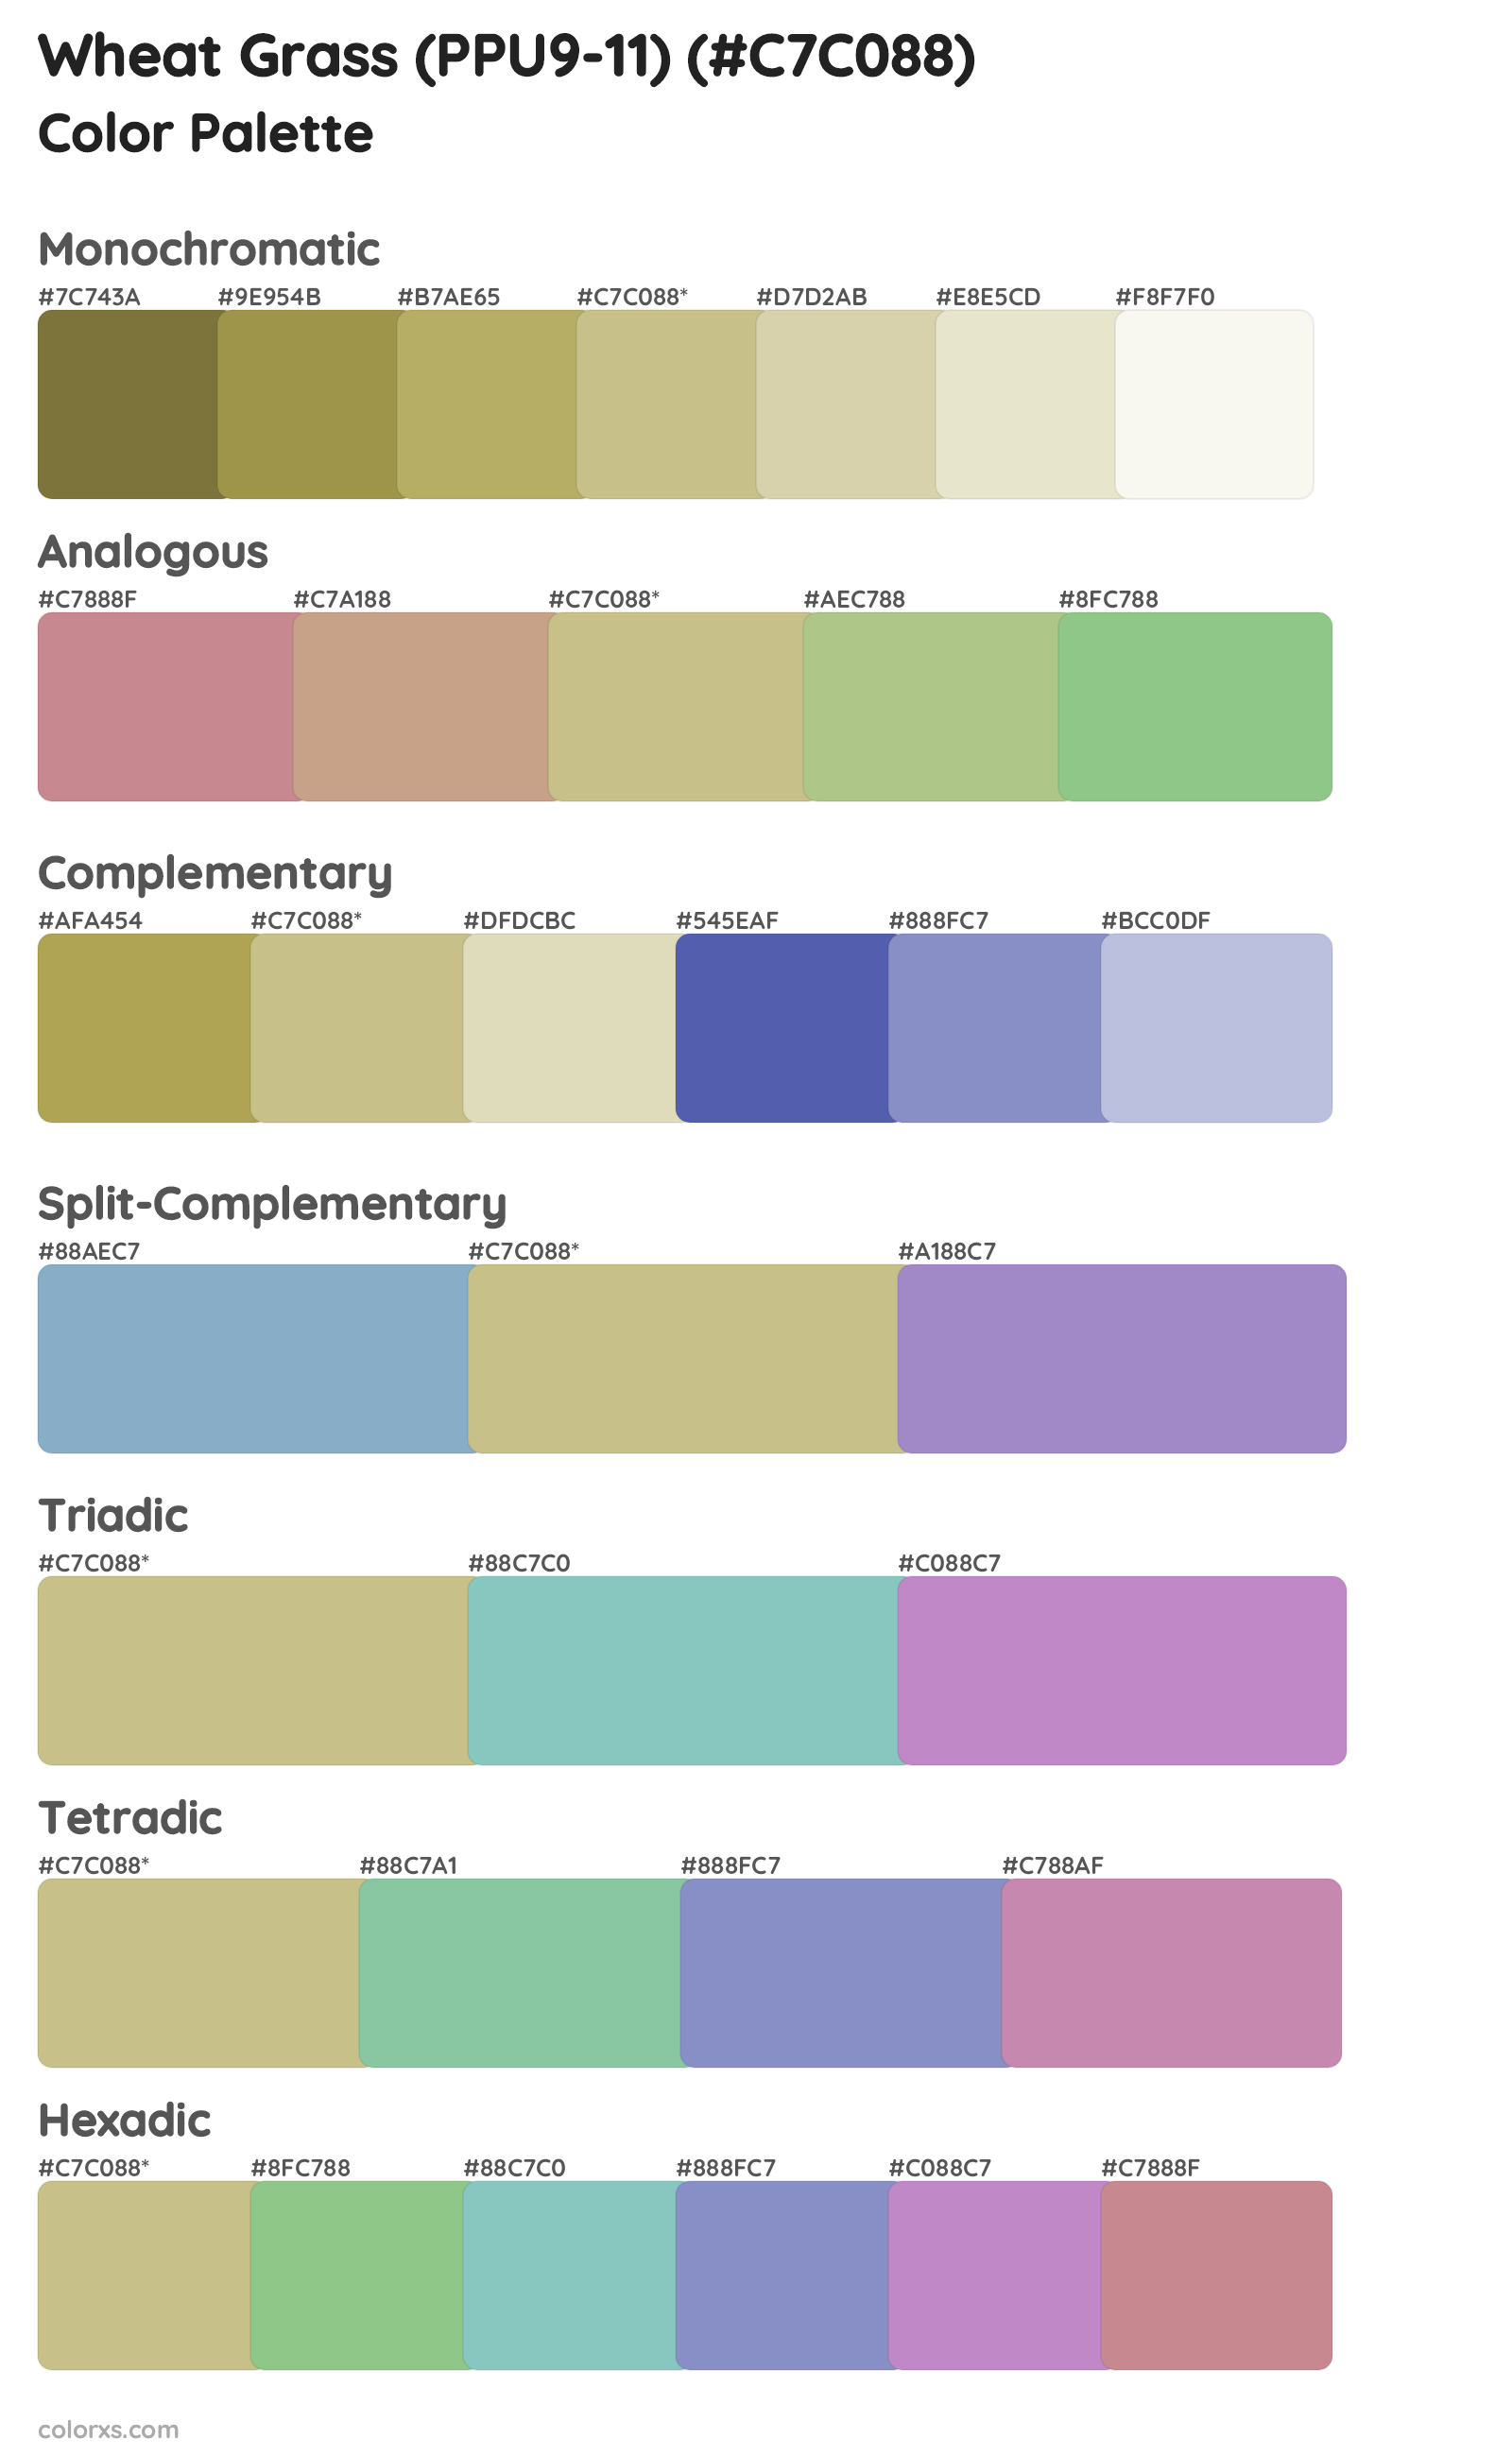 Wheat Grass (PPU9-11) Color Scheme Palettes